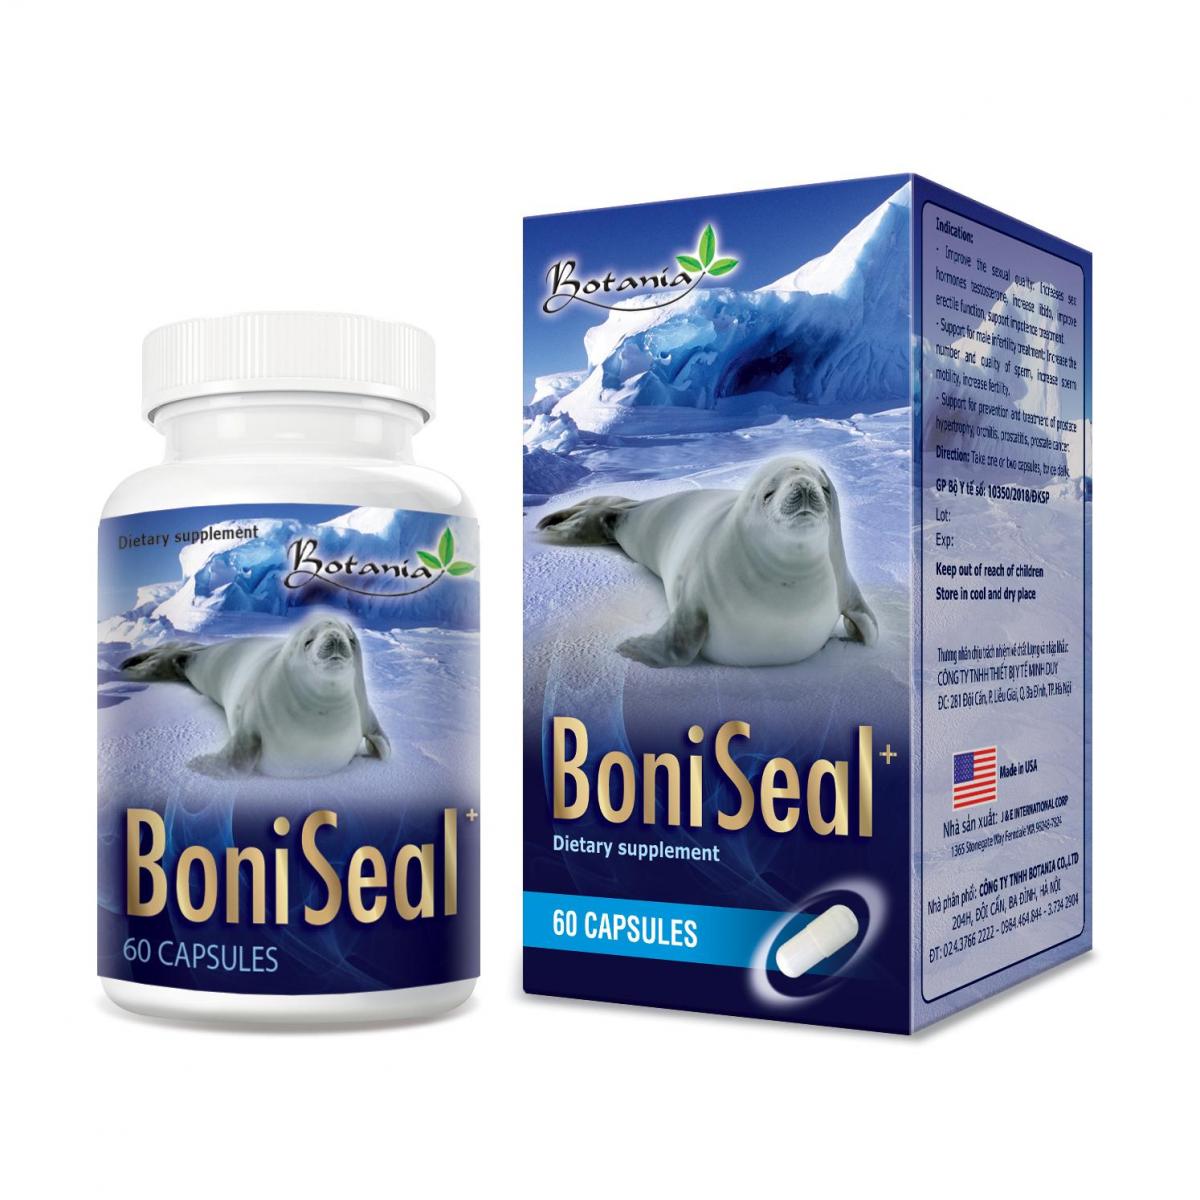 BoniSeal + Hỗ trợ bổ thận, kích thích cơ thể tăng tiết testosterol, tăng cường sinh lực nam, nâng cao sức khỏe